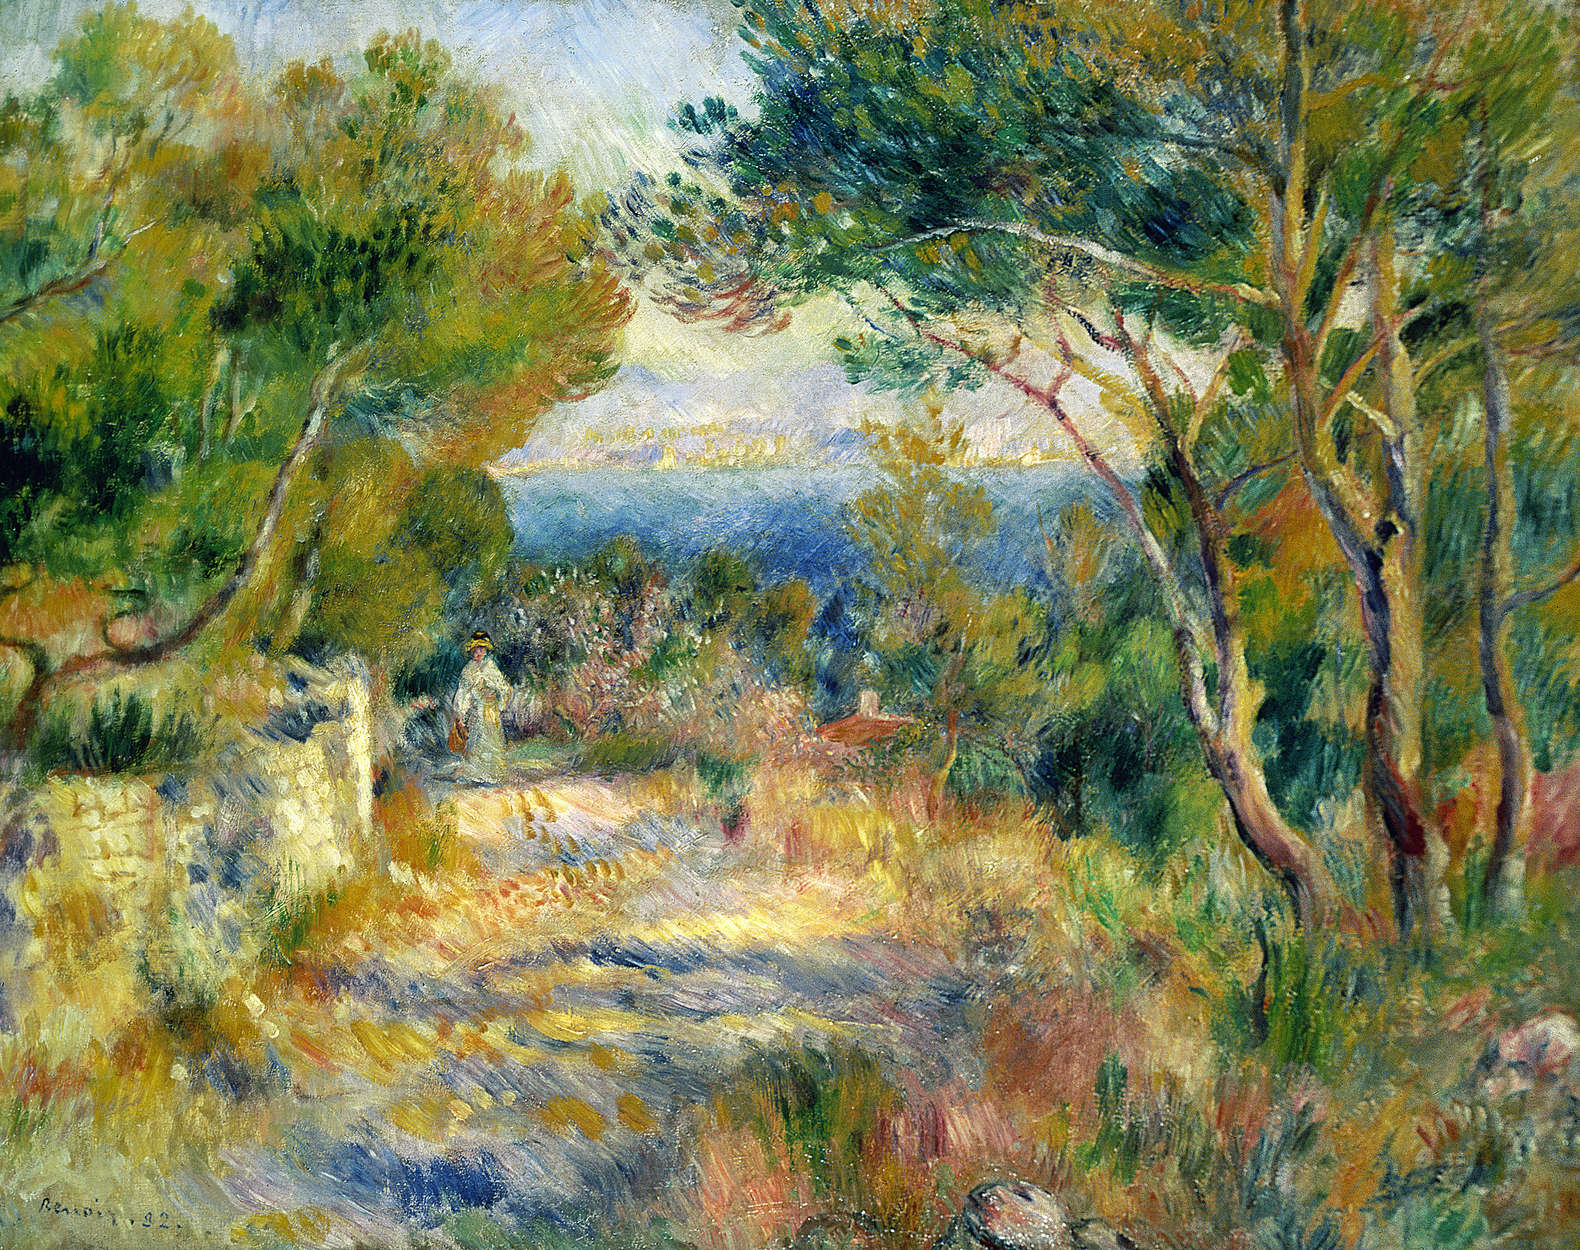             Papel pintado fotográfico "L'Estaque" de Pierre Auguste Renoir
        